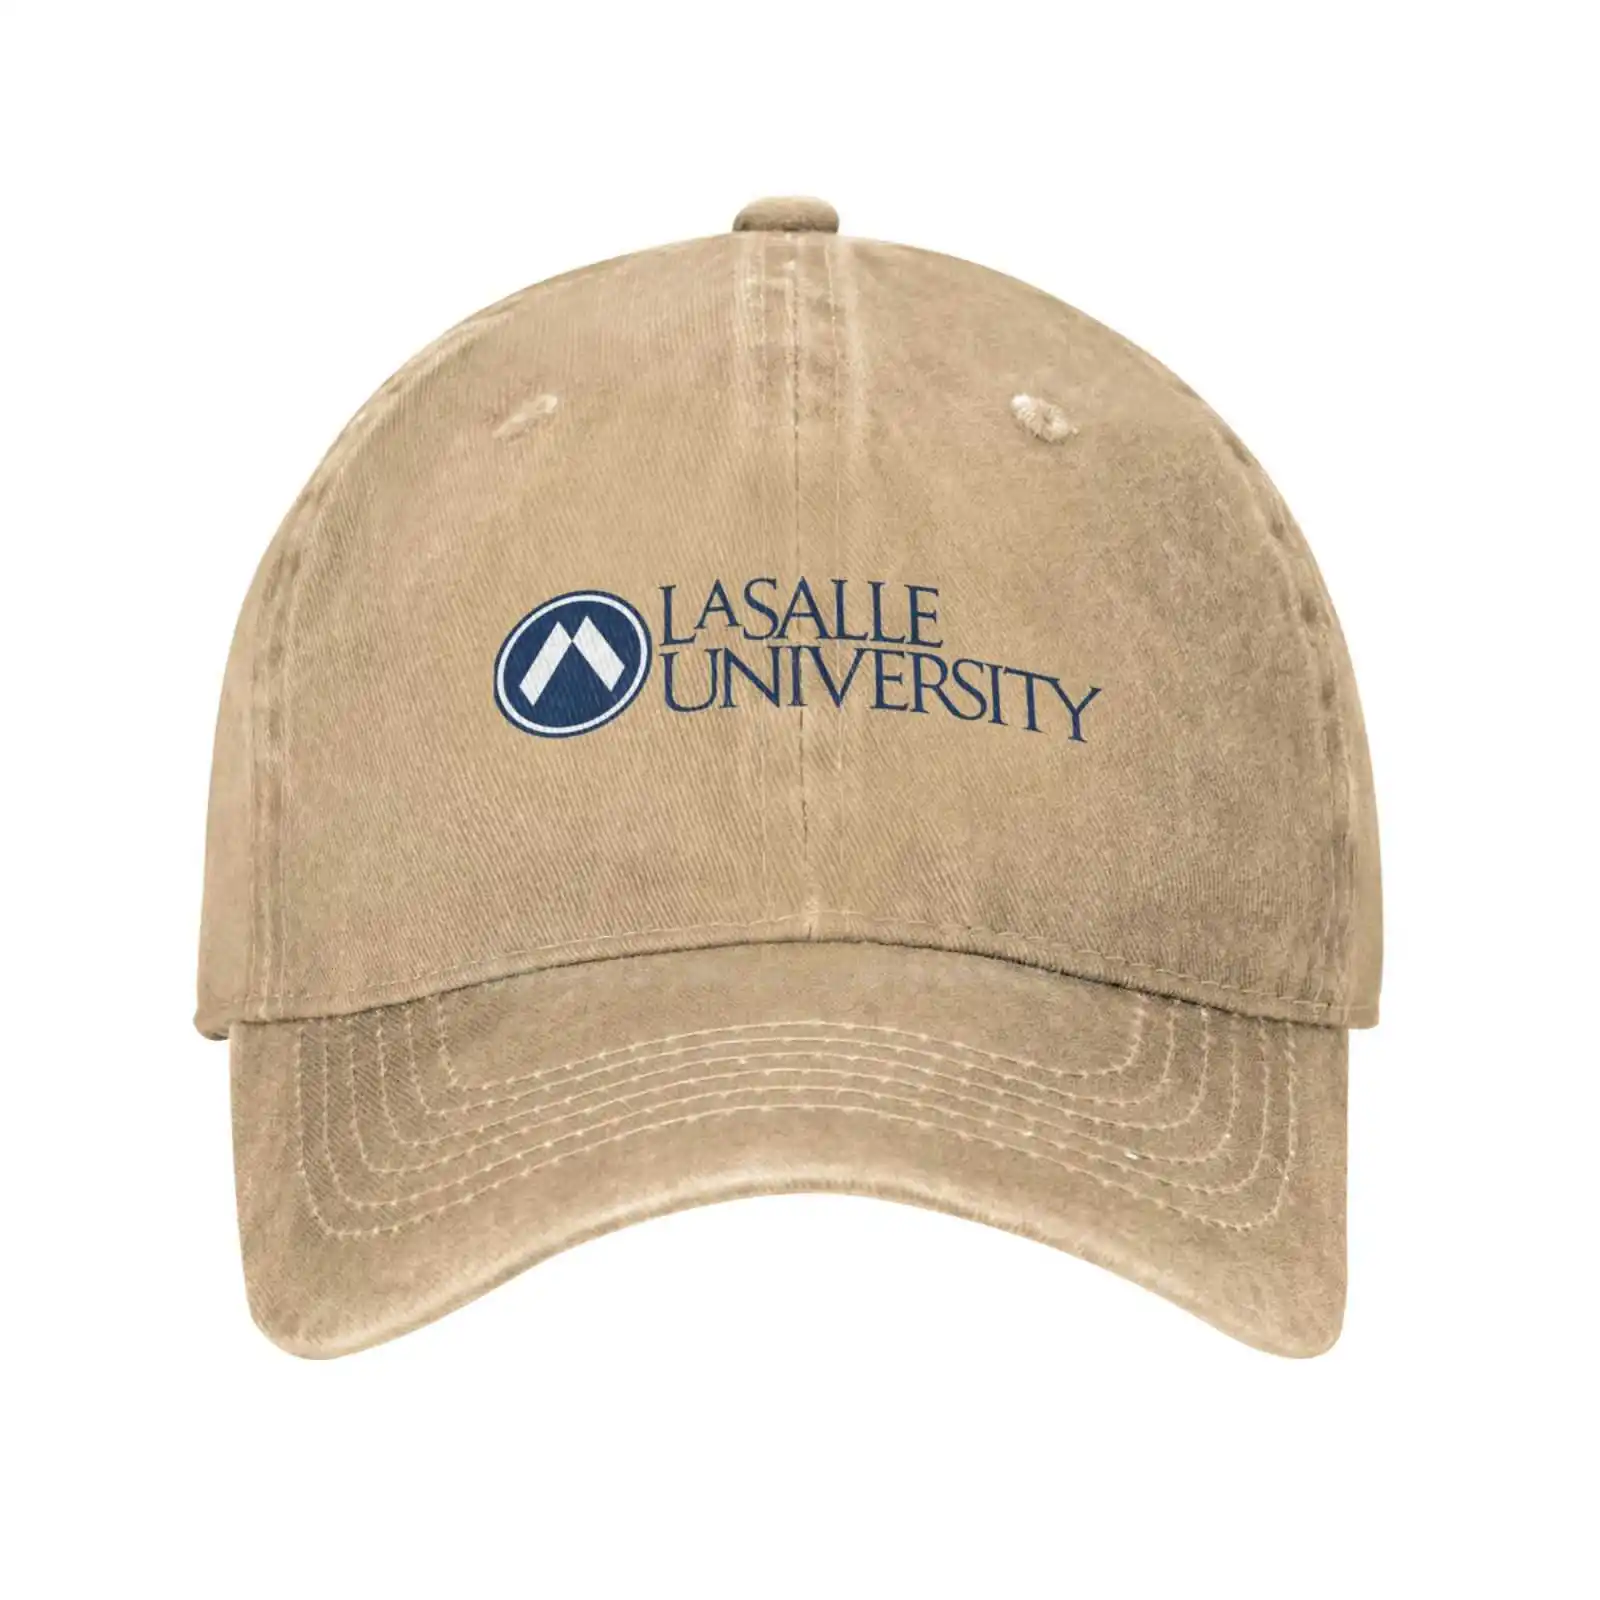 

Повседневная джинсовая бейсбольная кепка с принтом логотипа университета